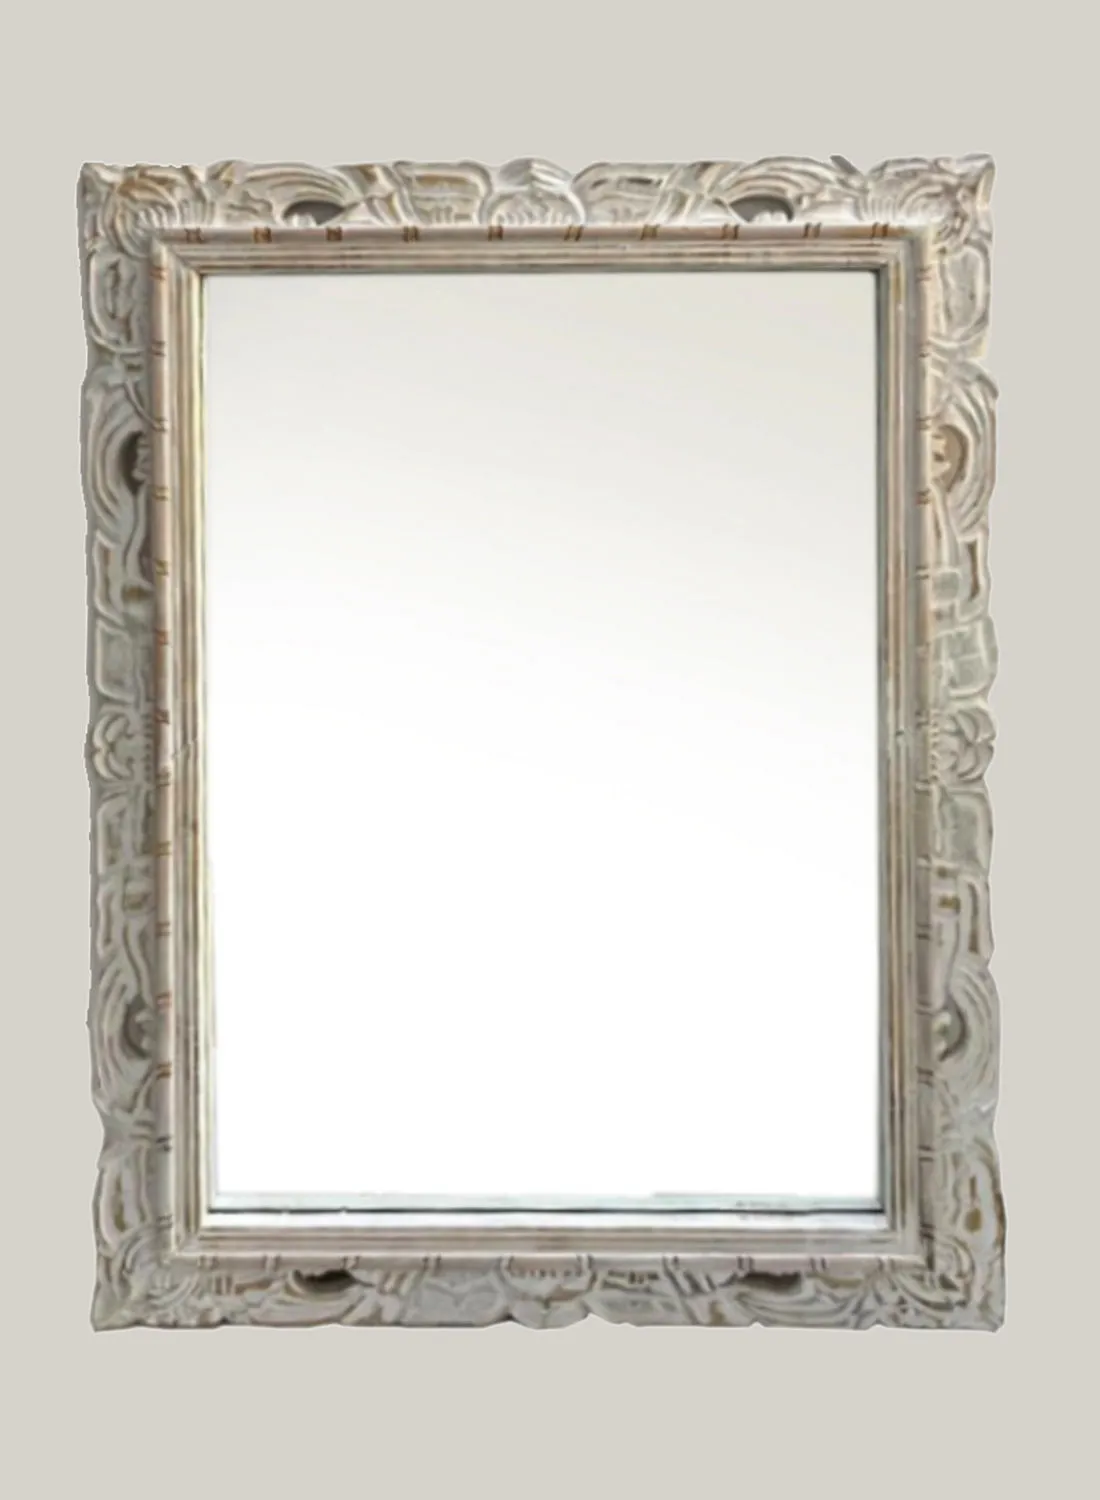 مرآة حائط بتصميم عصري من ebb & flow مادة فاخرة فريدة من نوعها ذات جودة عالية للمنزل الأنيق المثالي FE07 أبيض ممزق 107 x 80cm